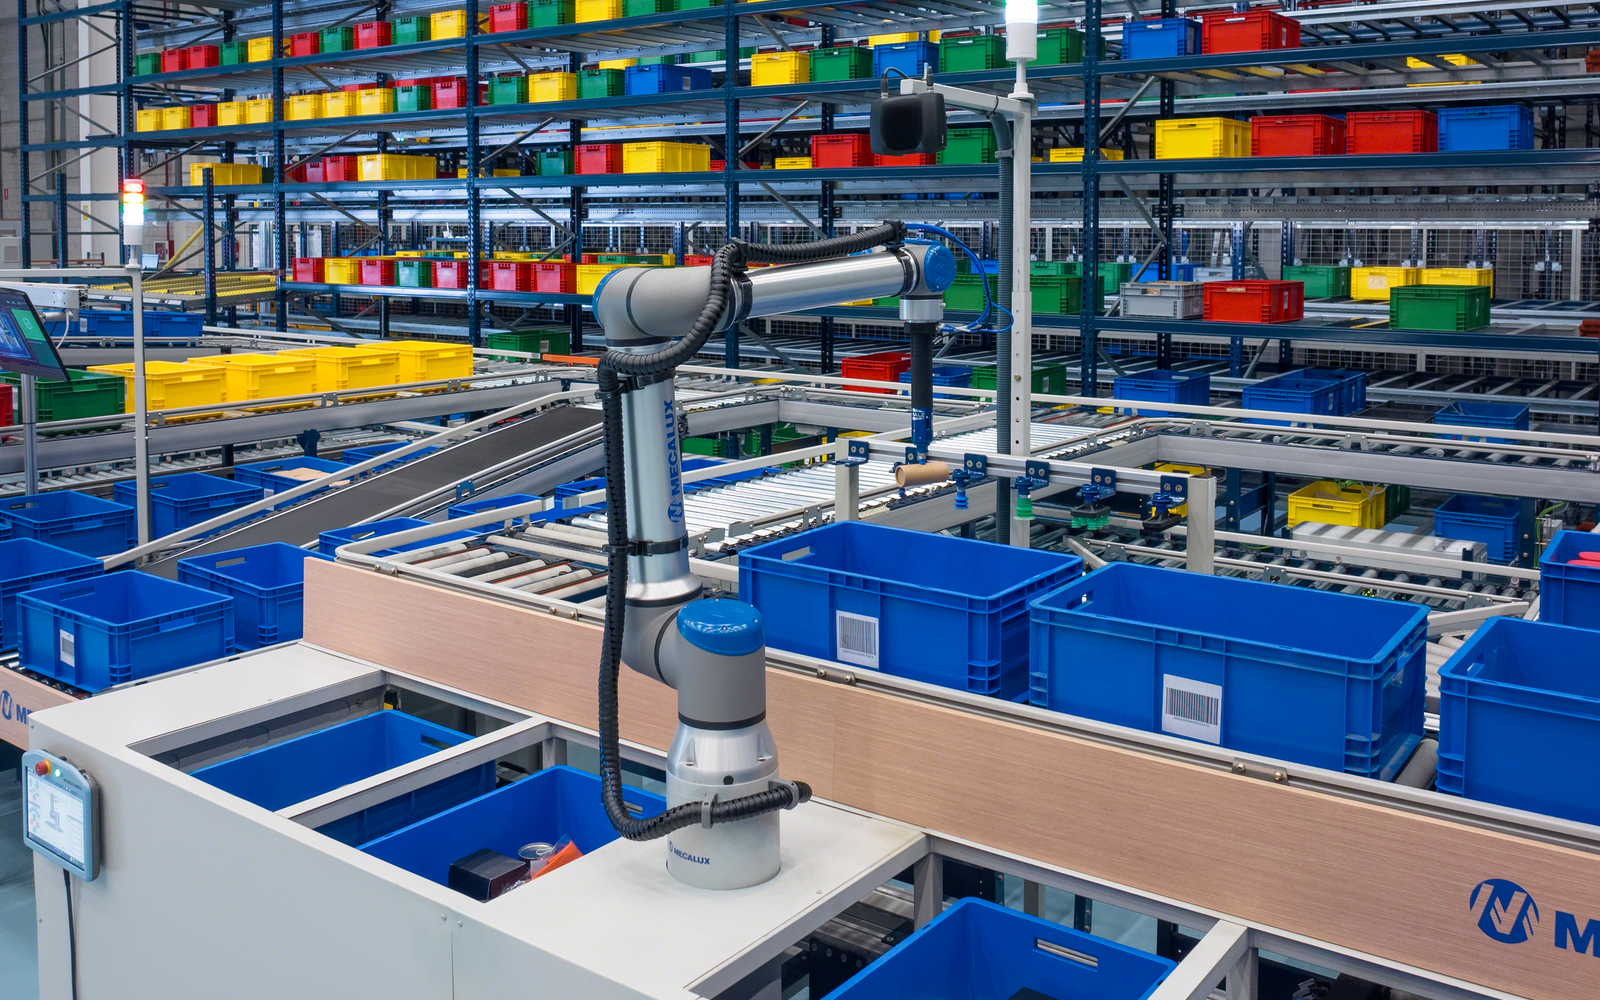 Siemens, Universal Robots i Zivid prezentują rozwiązanie nowej generacji do obsługi zamówień w logistyce wewnętrznej